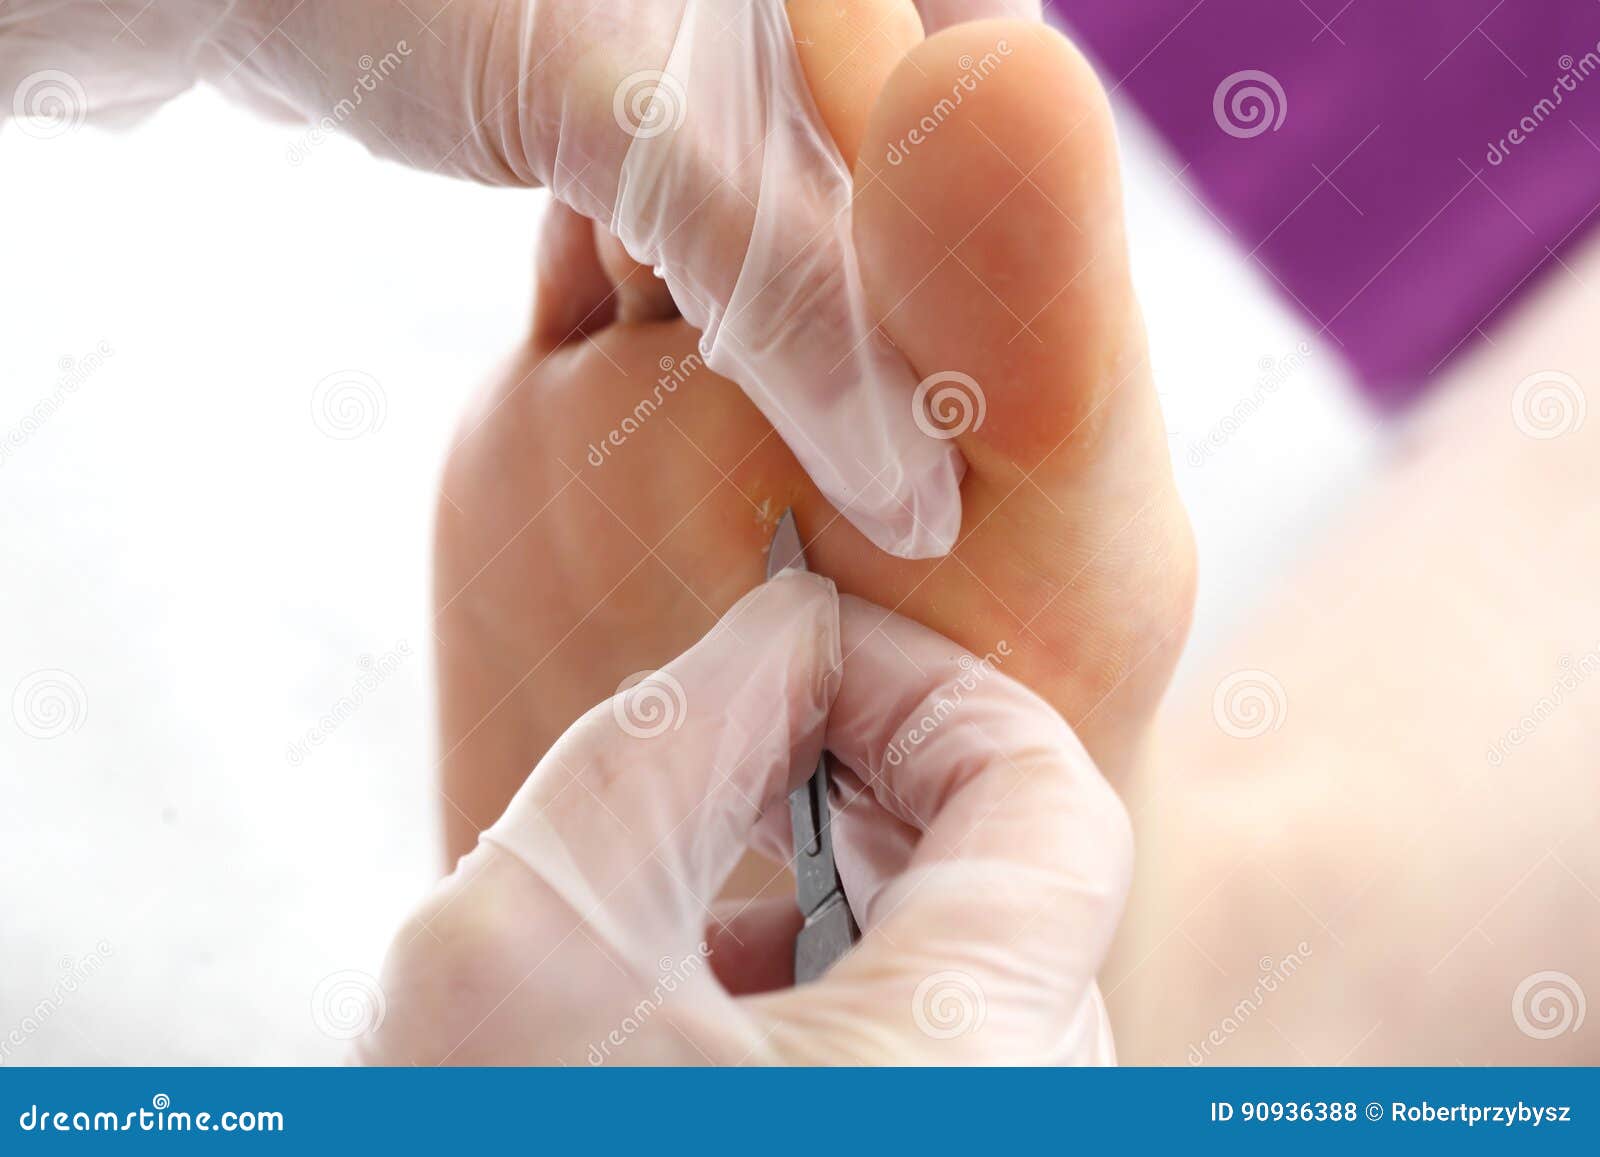 Κάλος στο πόδι. Ο γιατρός αφαιρεί τη σφραγίδα στο πόδι με ένα χειρουργικό νυστέρι